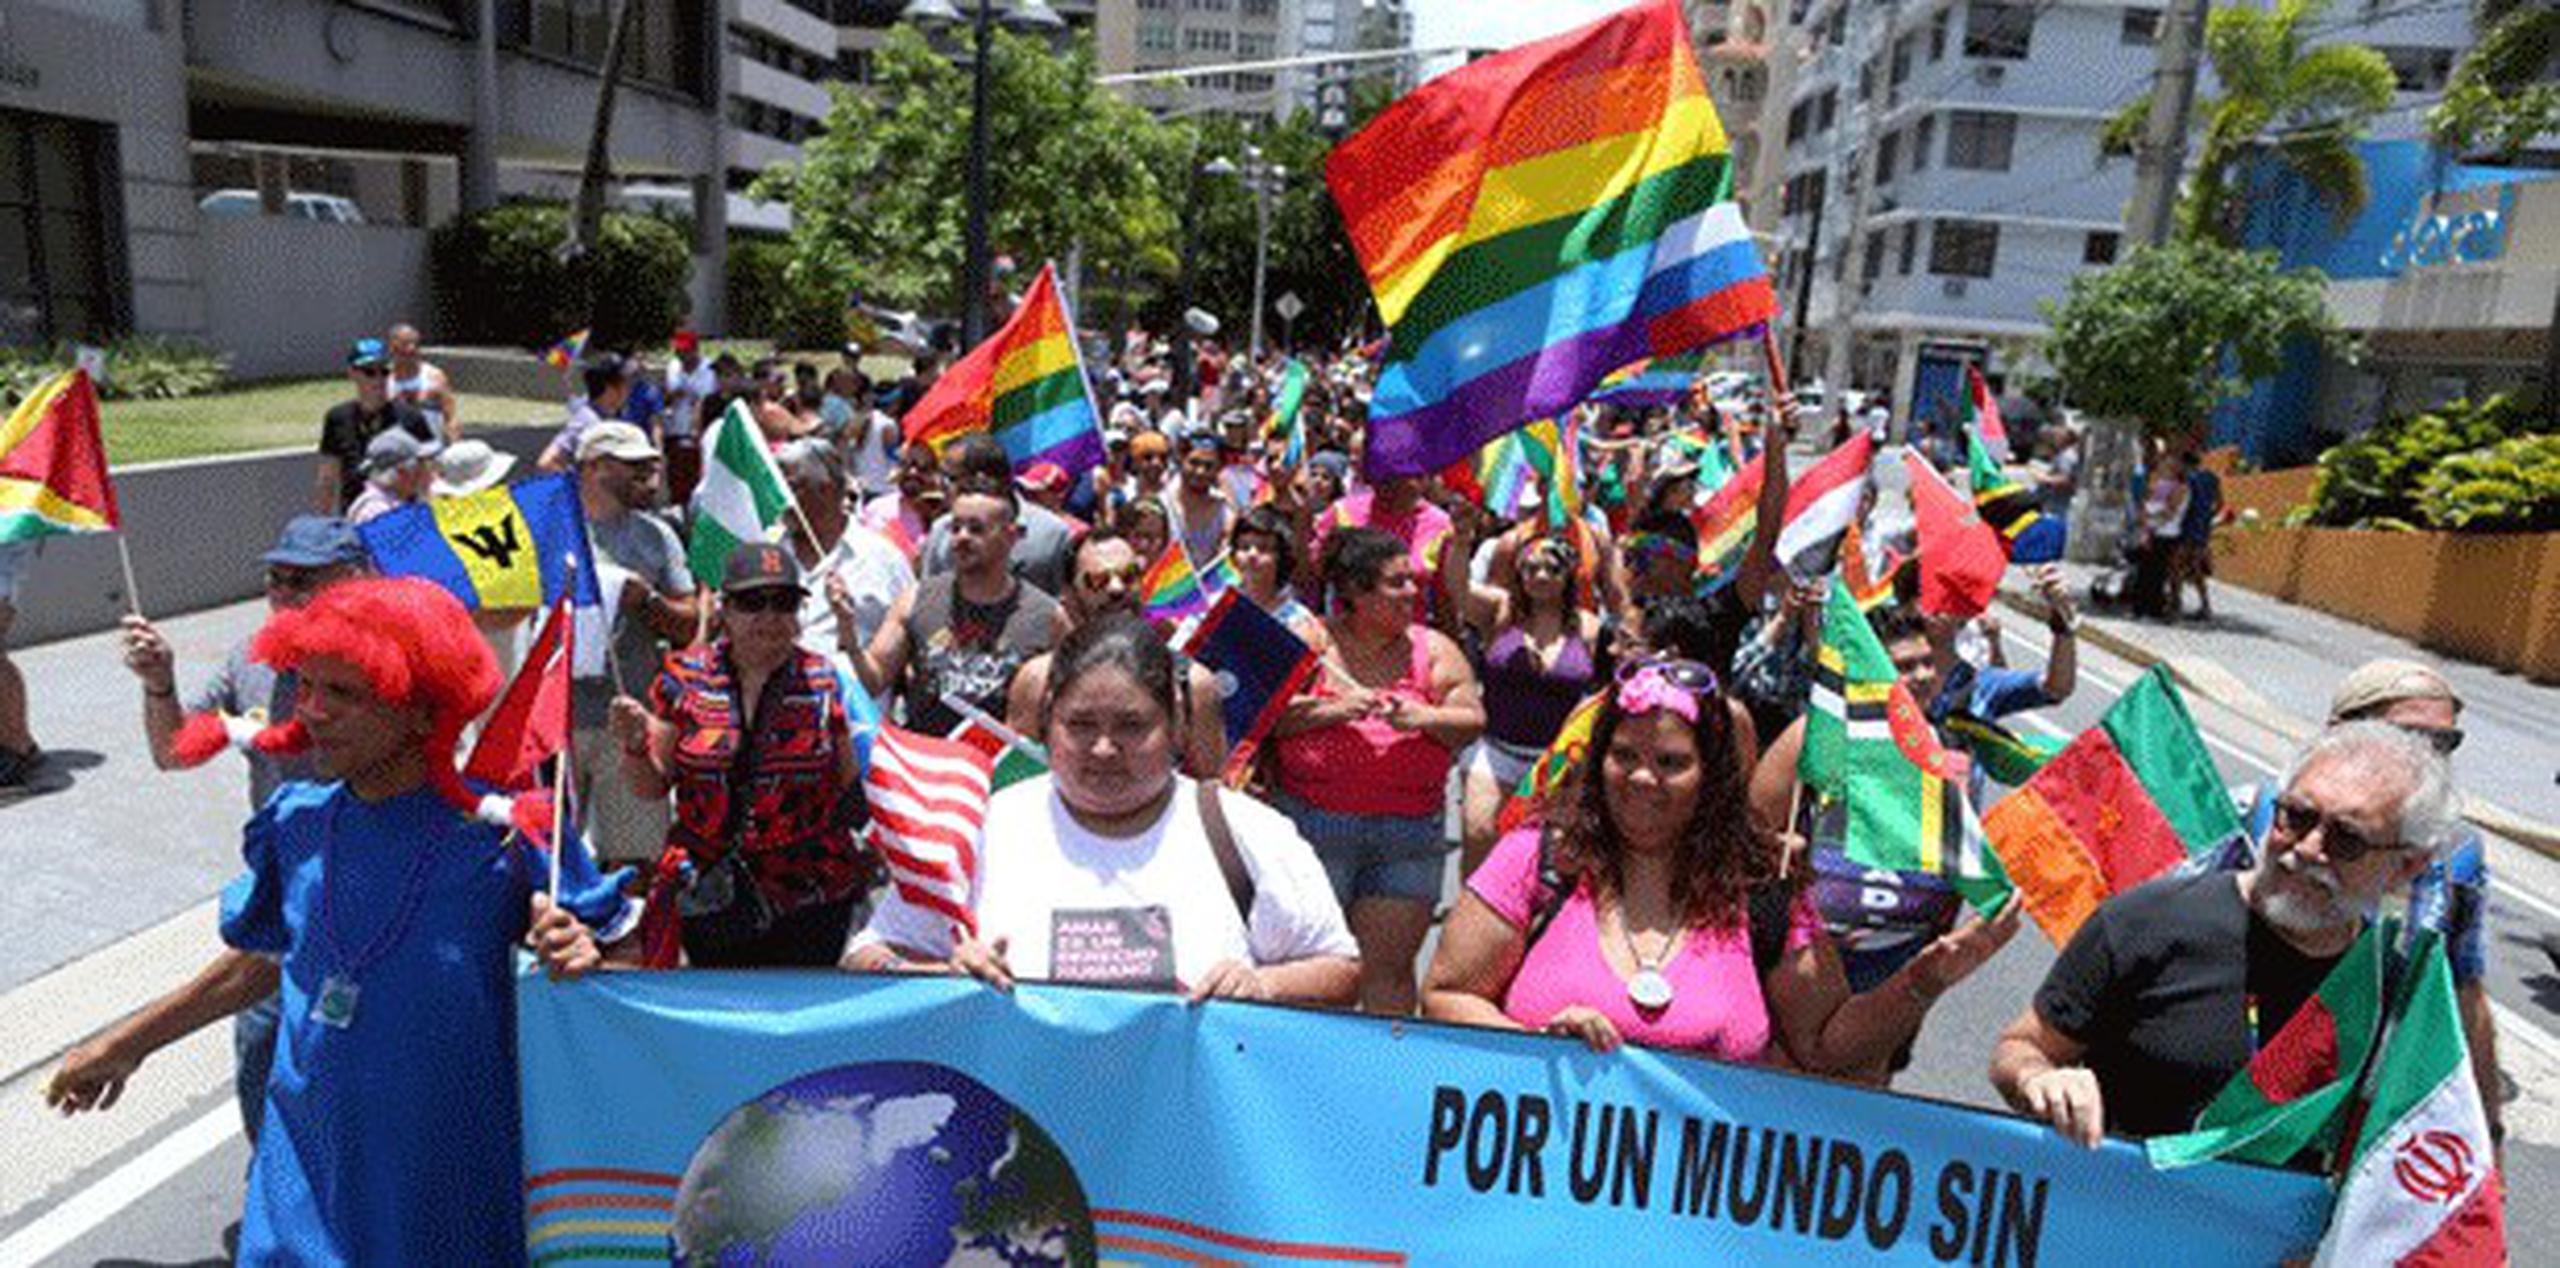 La edición número 24 de la Parada de Orgullo LGBTT en San Juan contó con alrededor de siete mil asistentes. (JUAN.ALICEA@GFRMEDIA.COM)